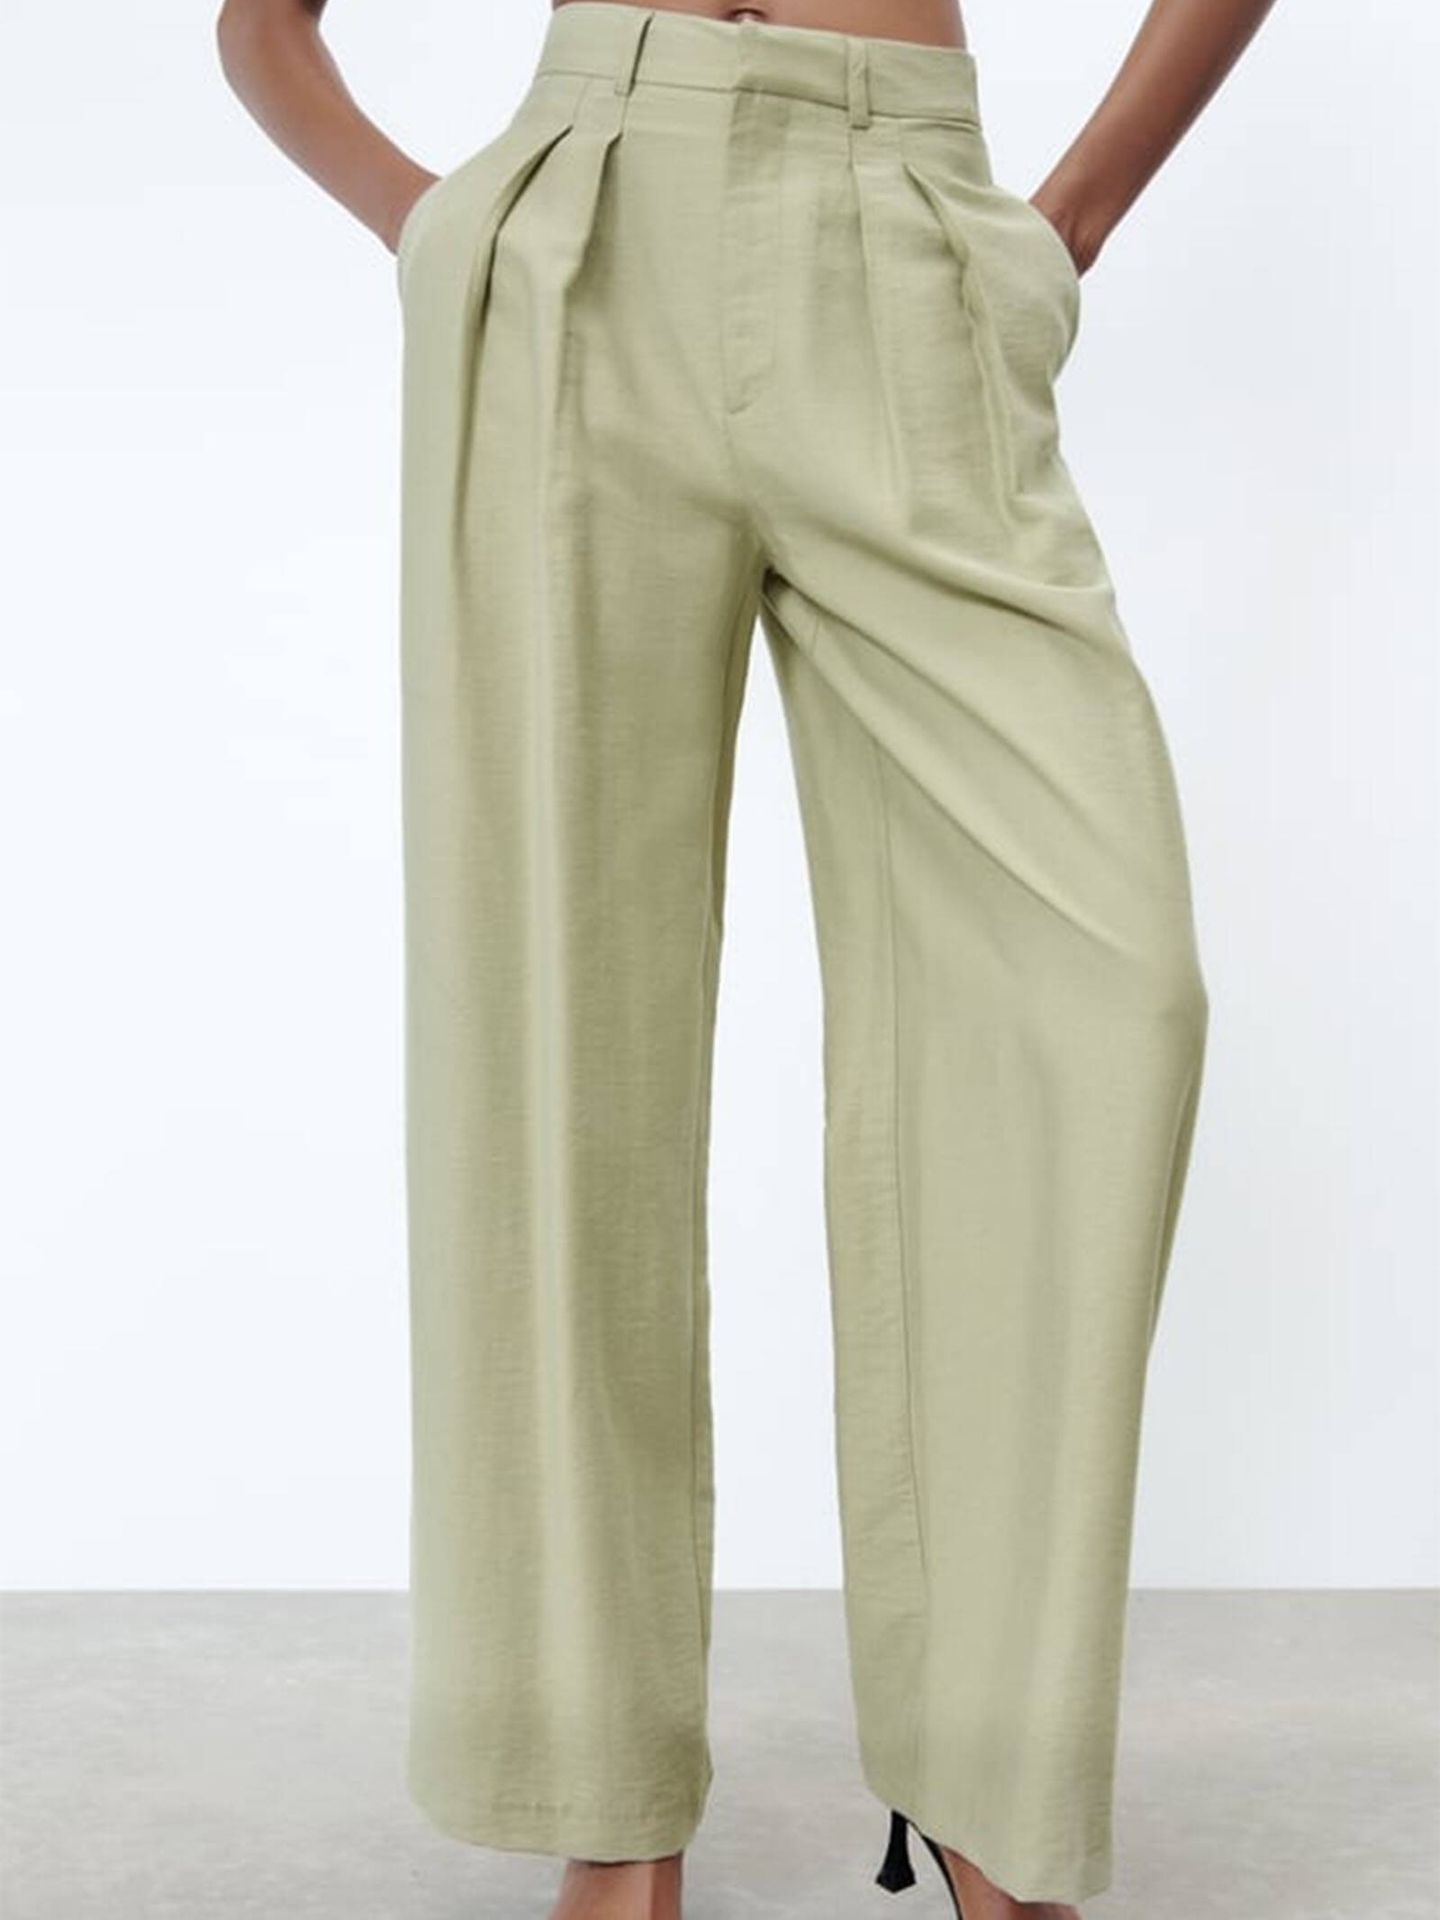 El pantalón con efecto vientre plano. (Zara/Cortesía)